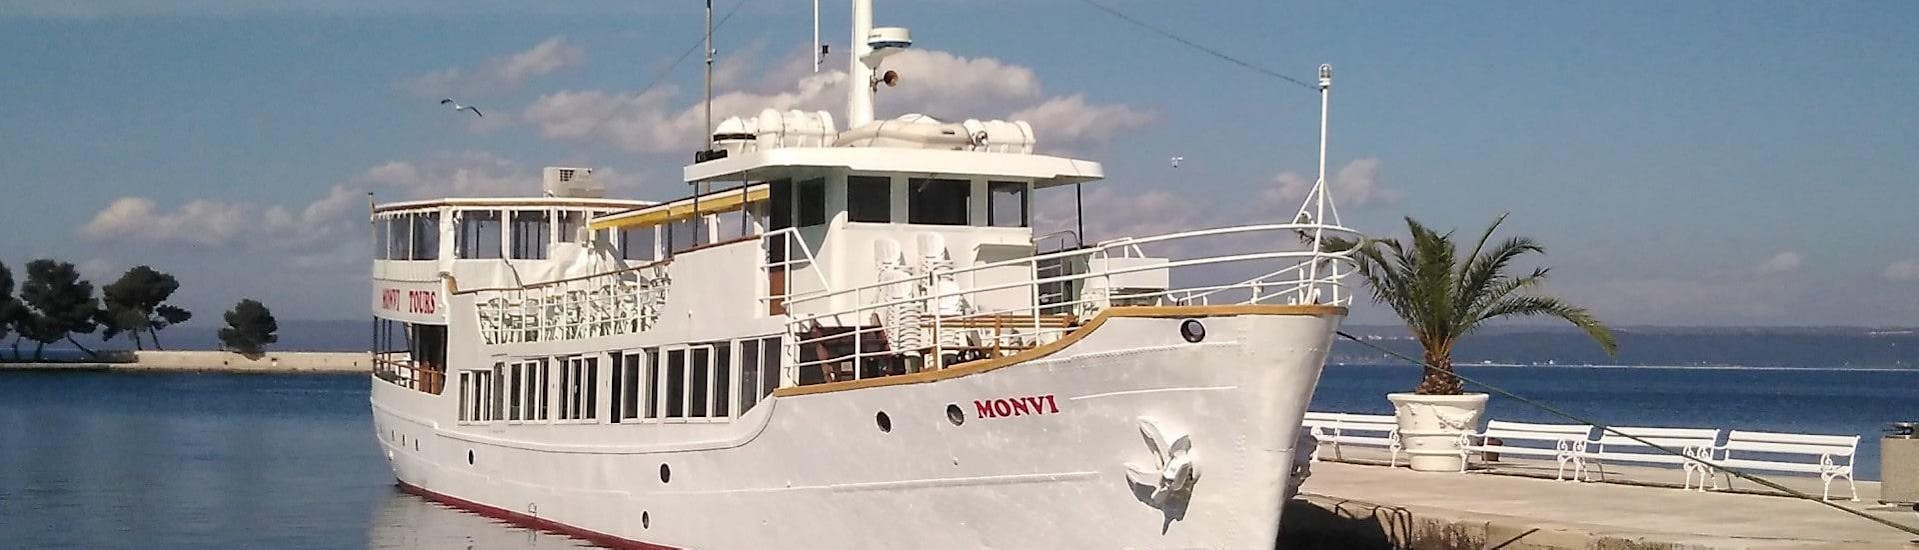 Una imagen del barco de Monvi Tours Poreč durante el Paseo en barco a Rovinj y Vrsar con almuerzo.